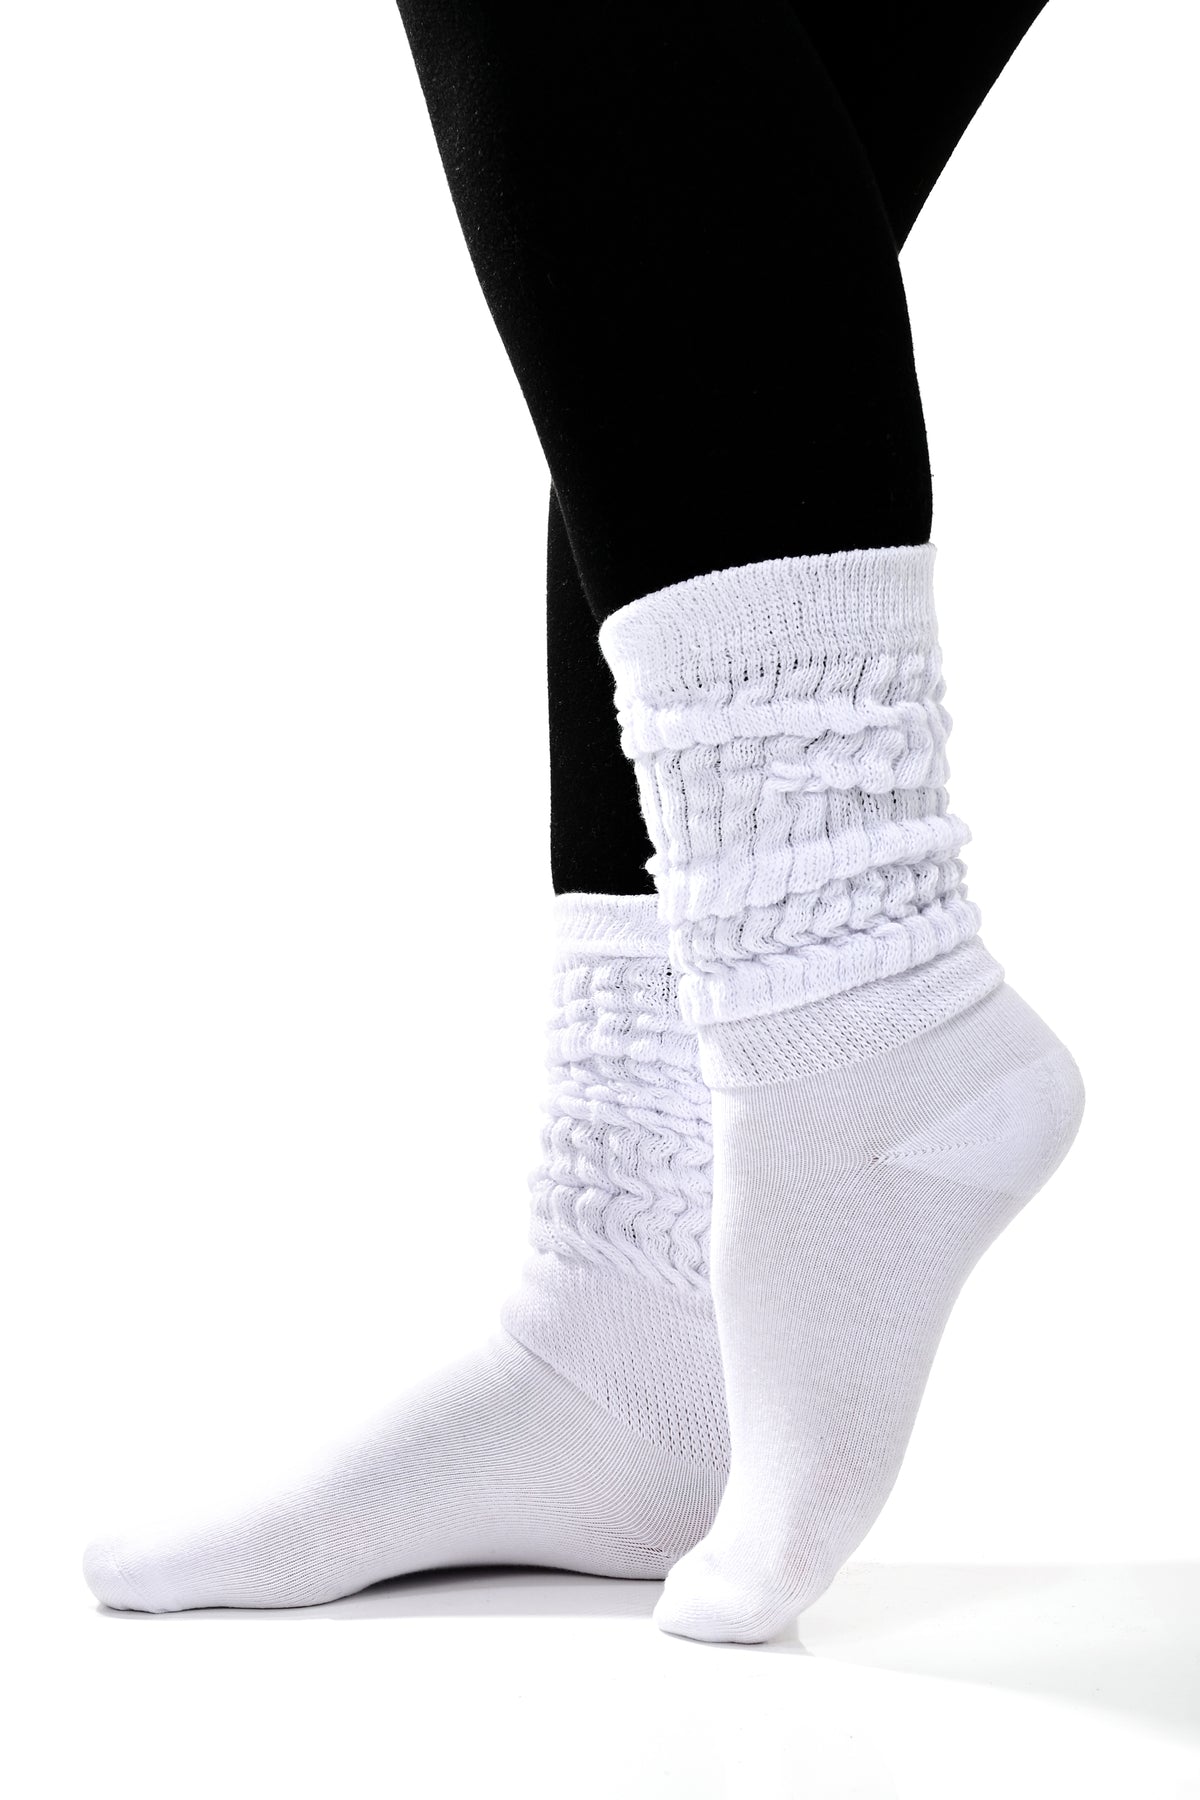 white scrunch socks on a foot